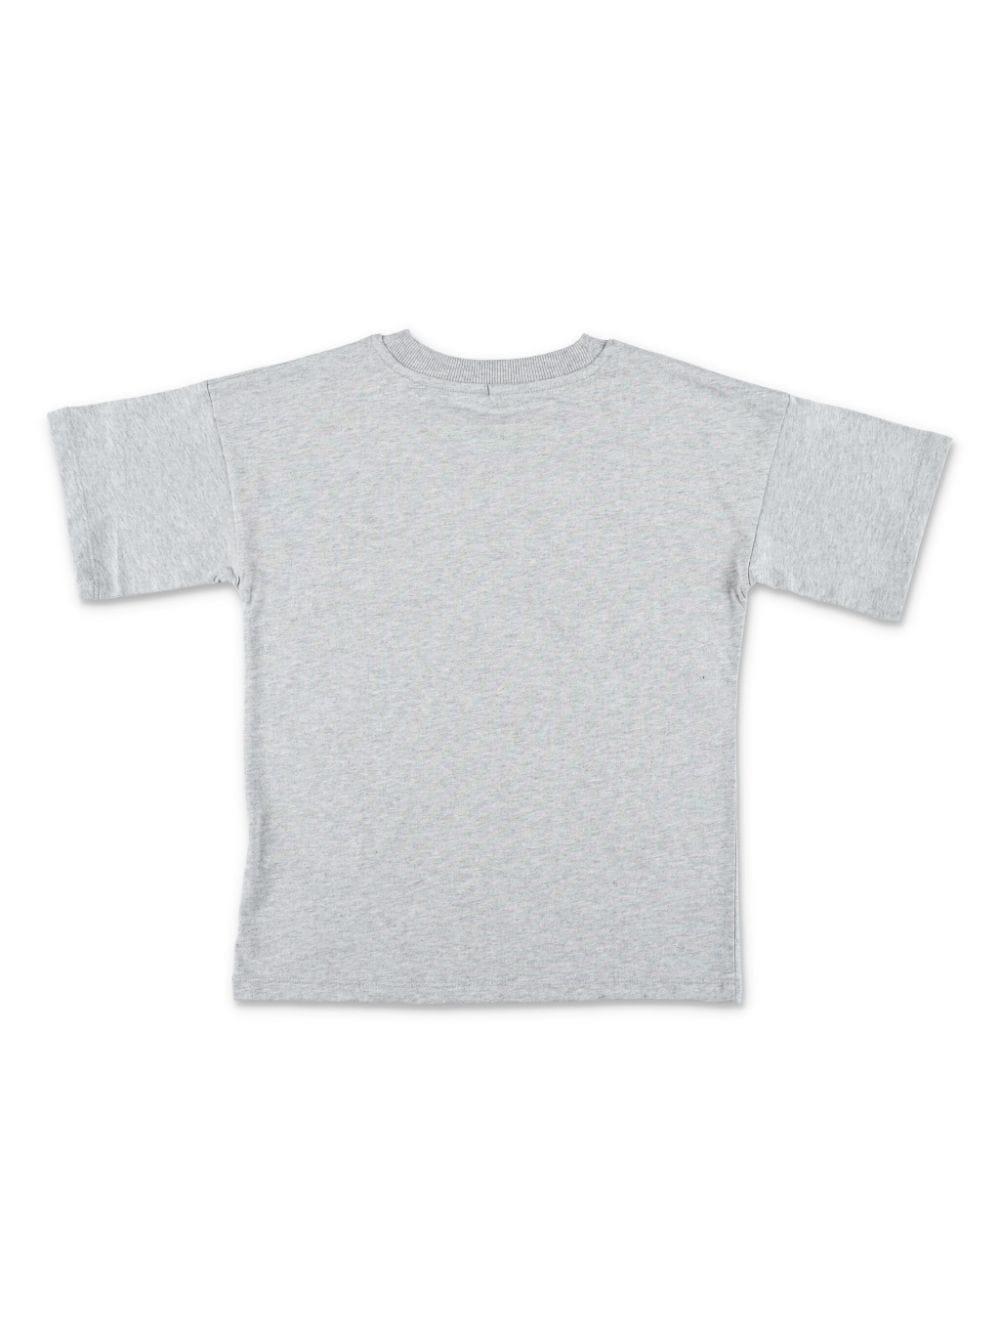 Mini Rodini Hike organic cotton T-shirt - Grijs